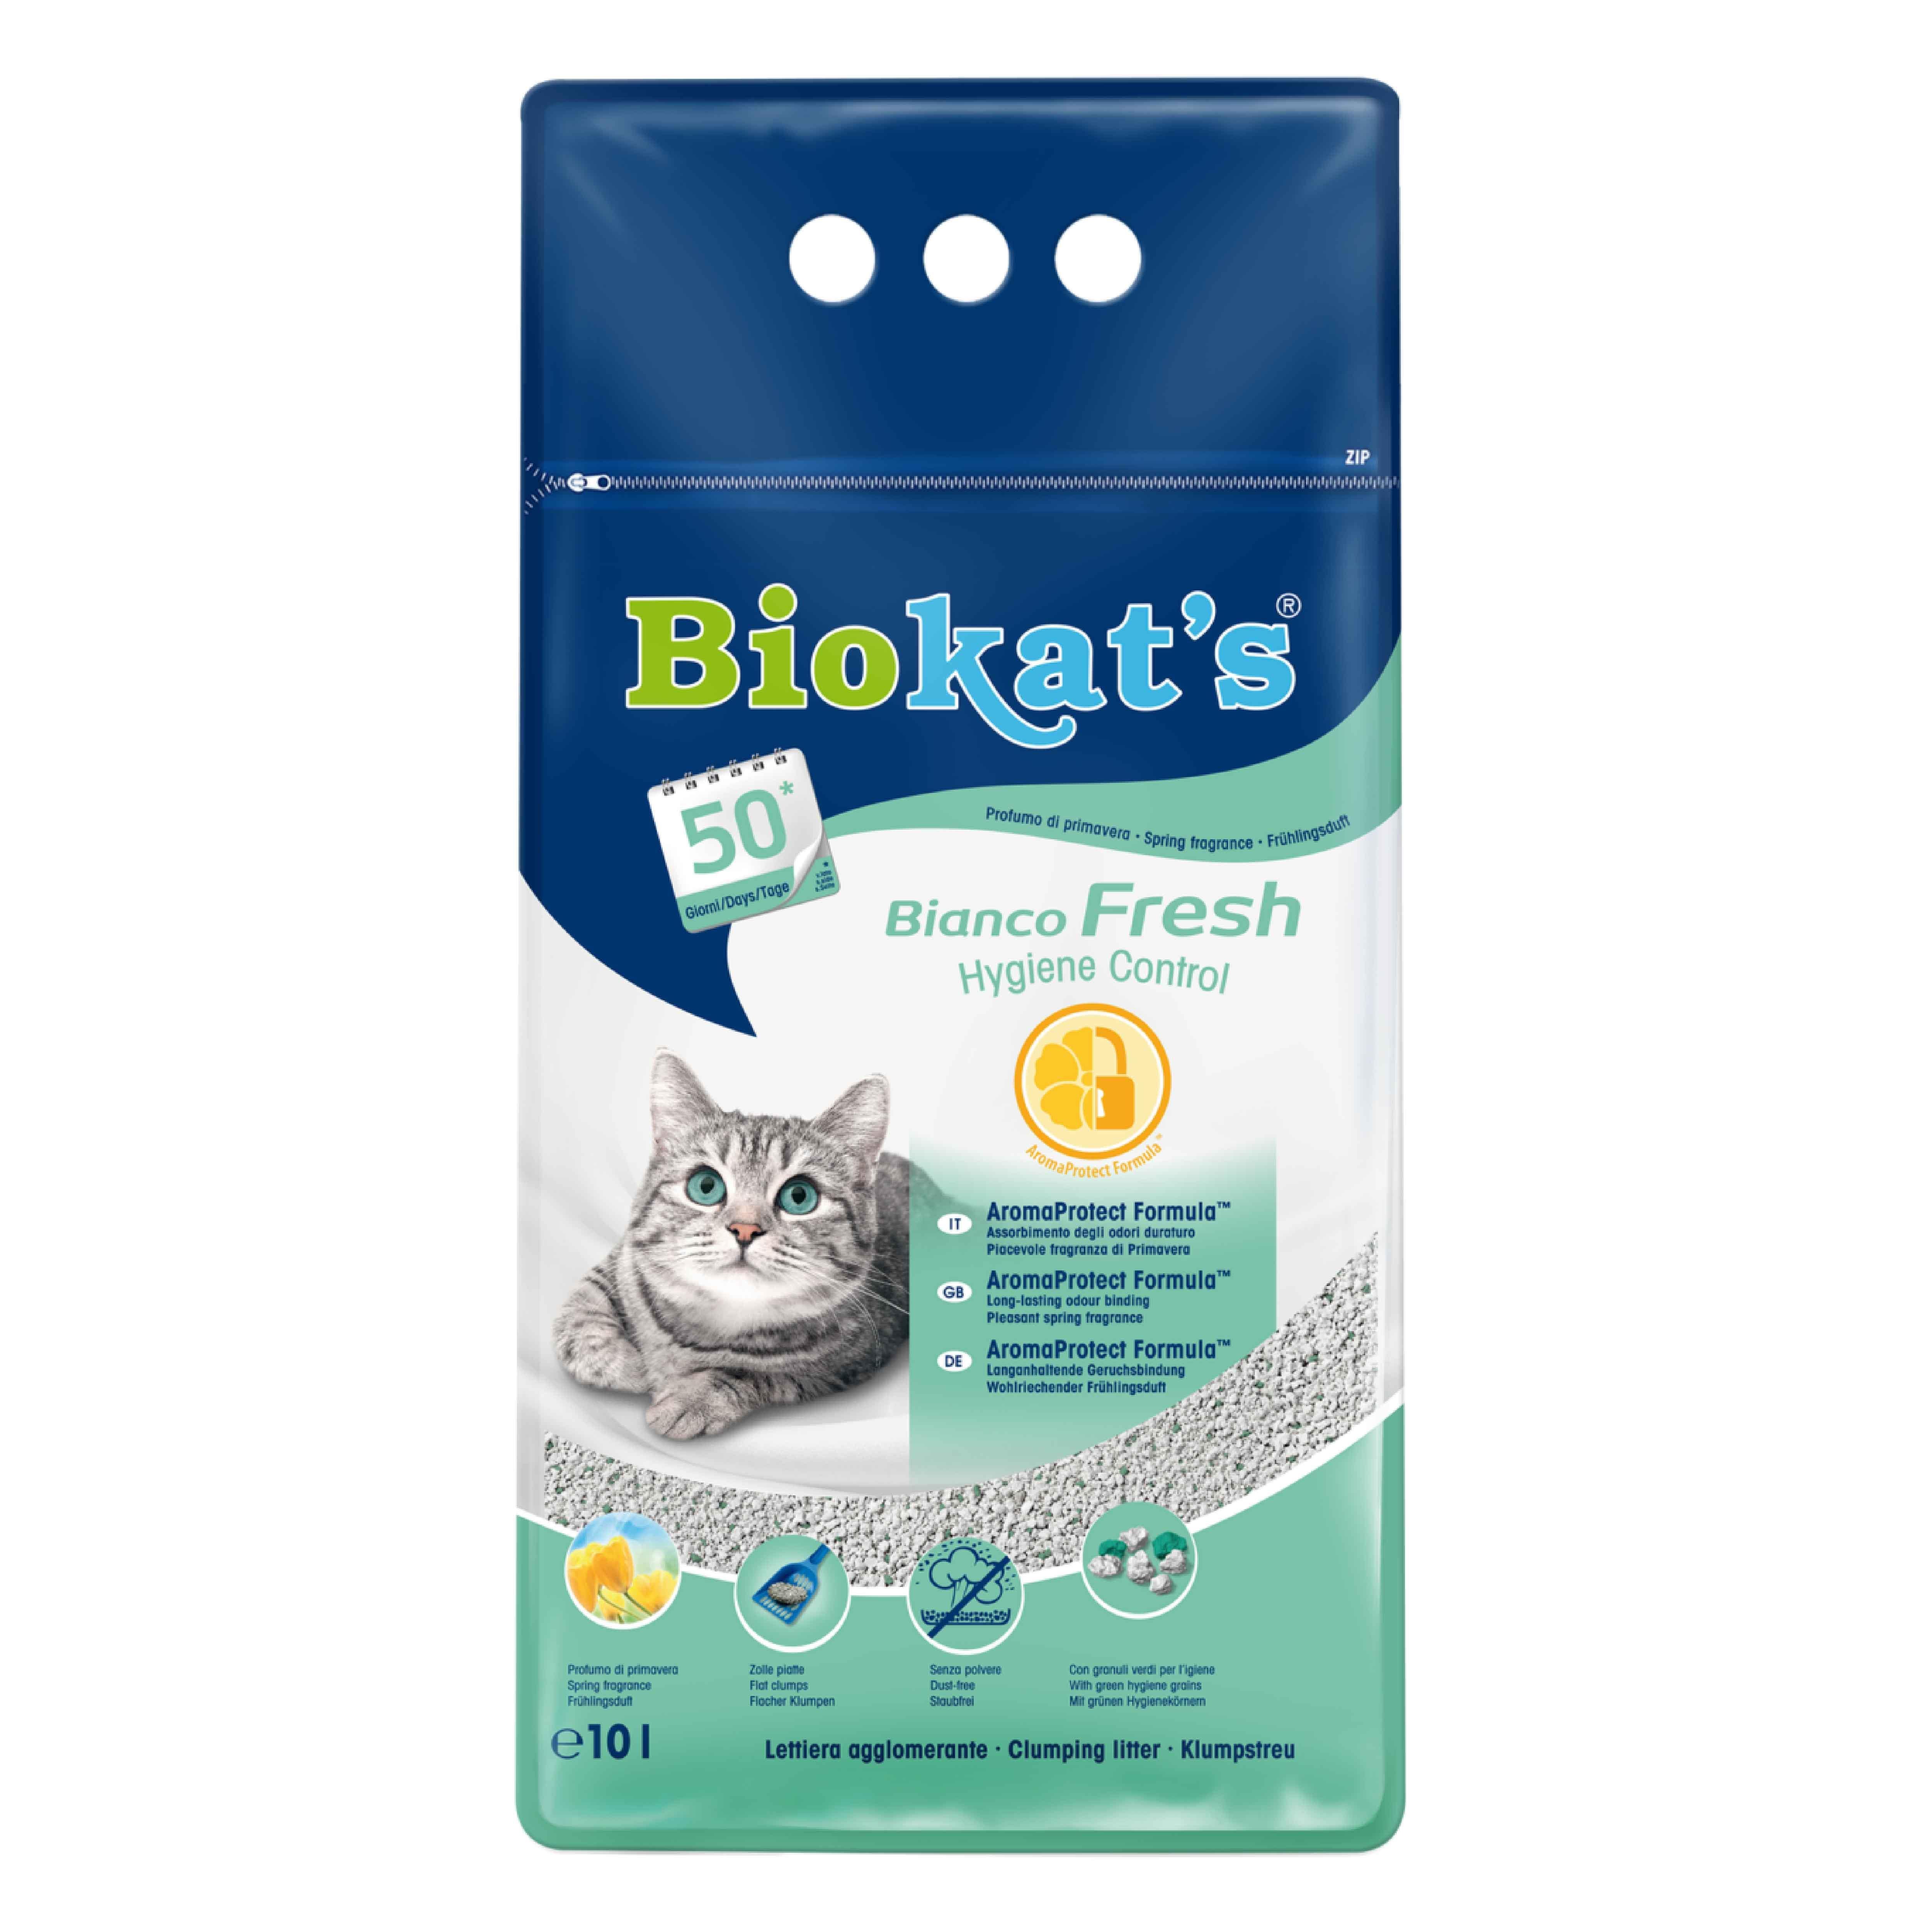 Biokat's Bianco Fresh Kedi Kumu 10 Lt